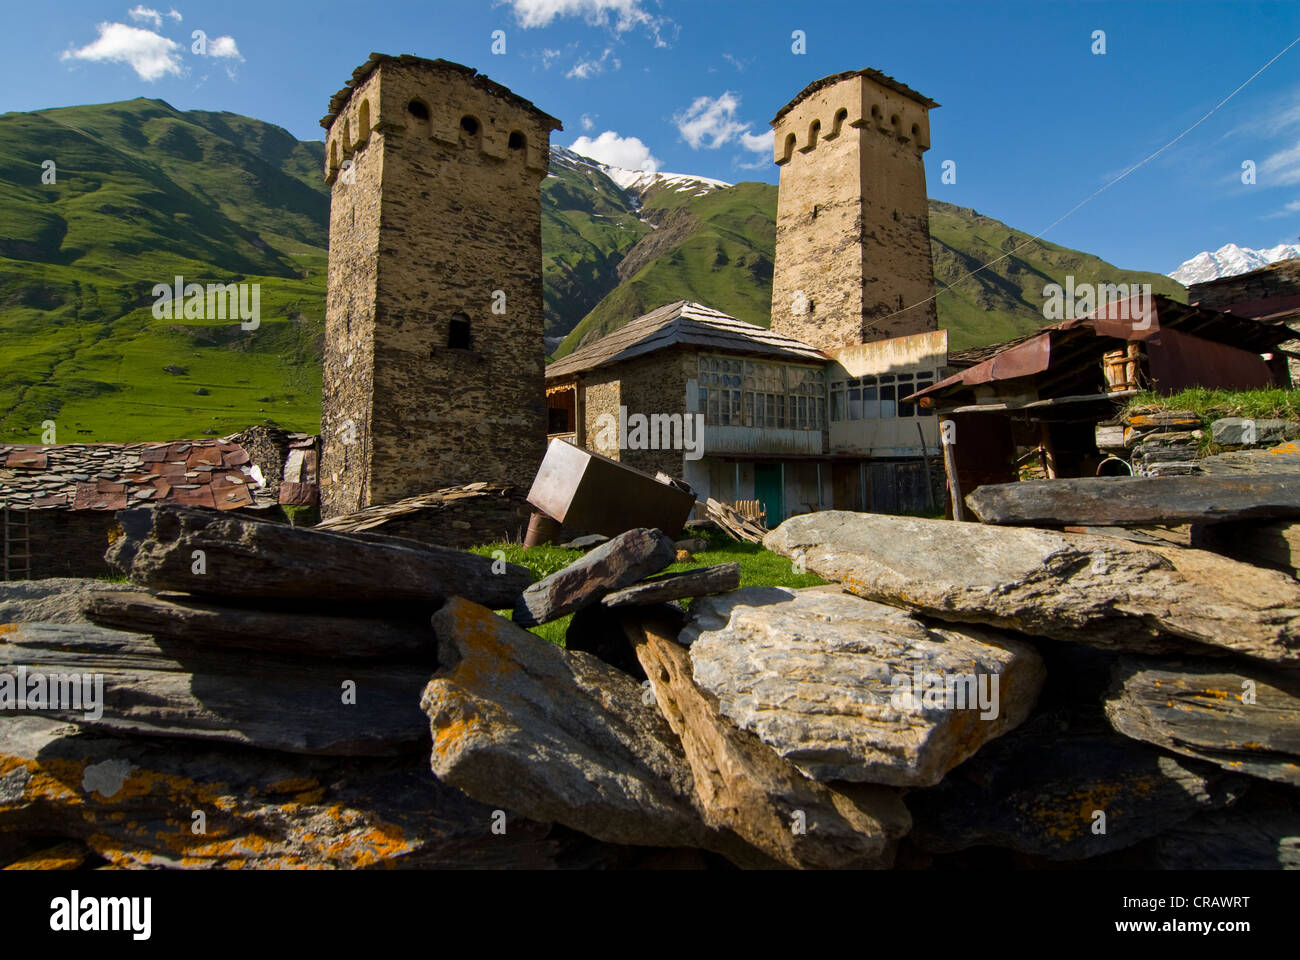 Village de montagne historique Ushguli, UNESCO World Heritage site, province de Svaneti, Géorgie, au Moyen-Orient Banque D'Images